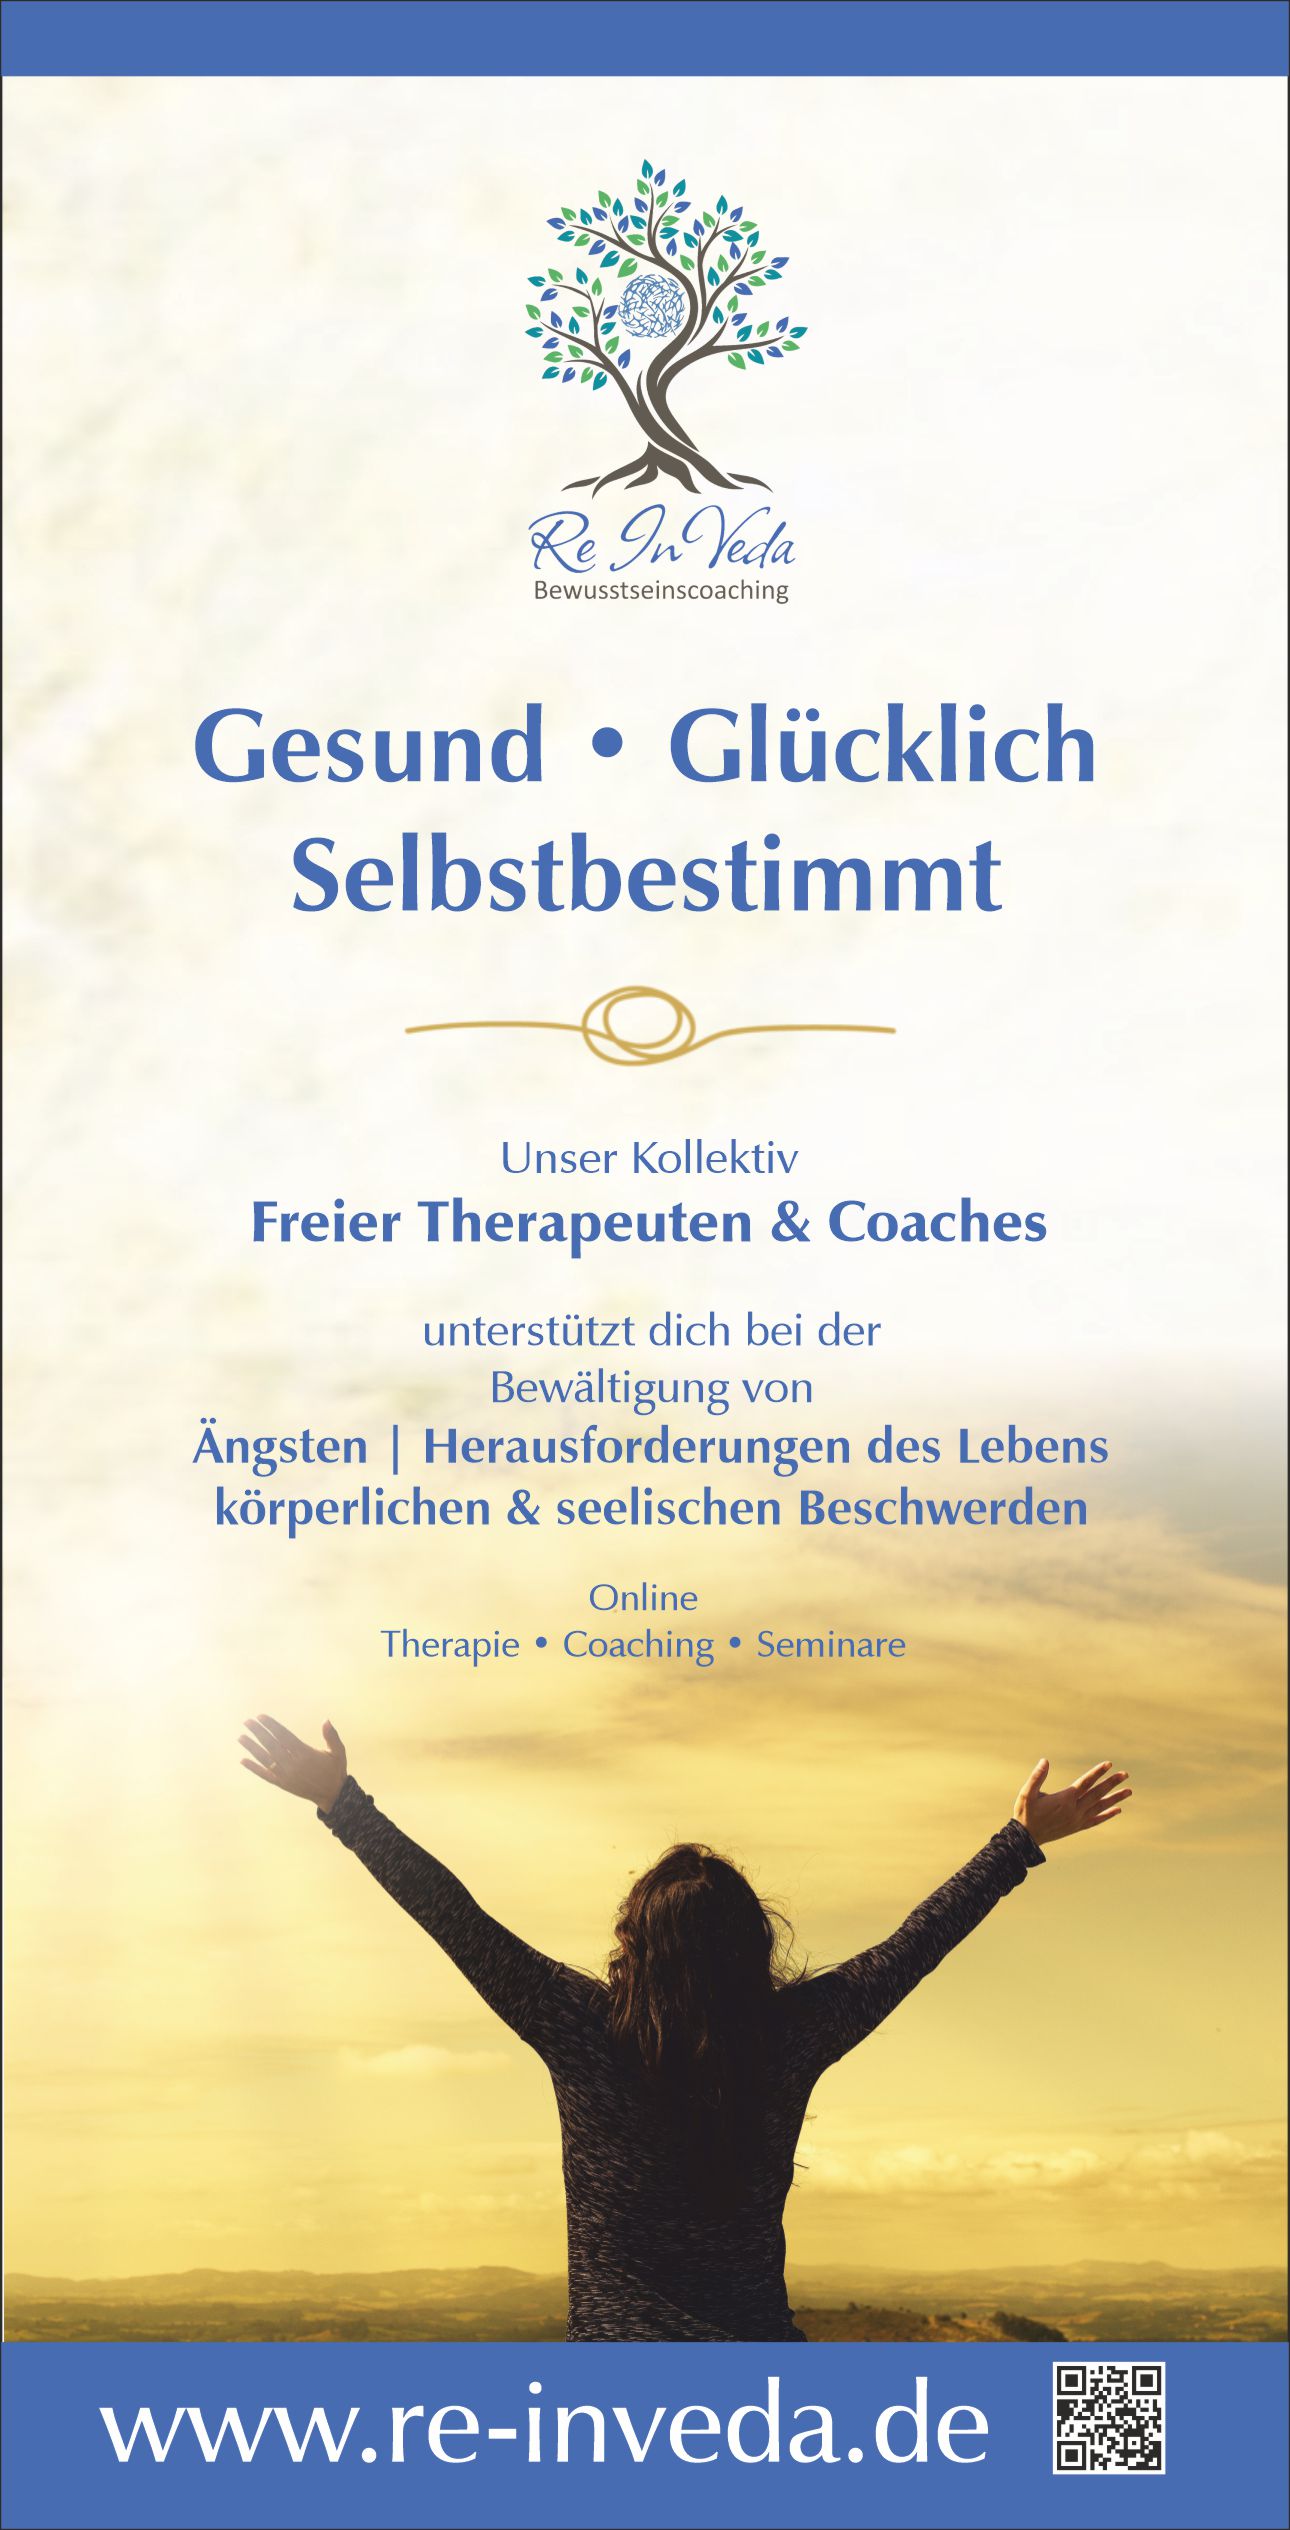 Flyer im Hochformat für Therapeuten und Coaches gestalten lassen